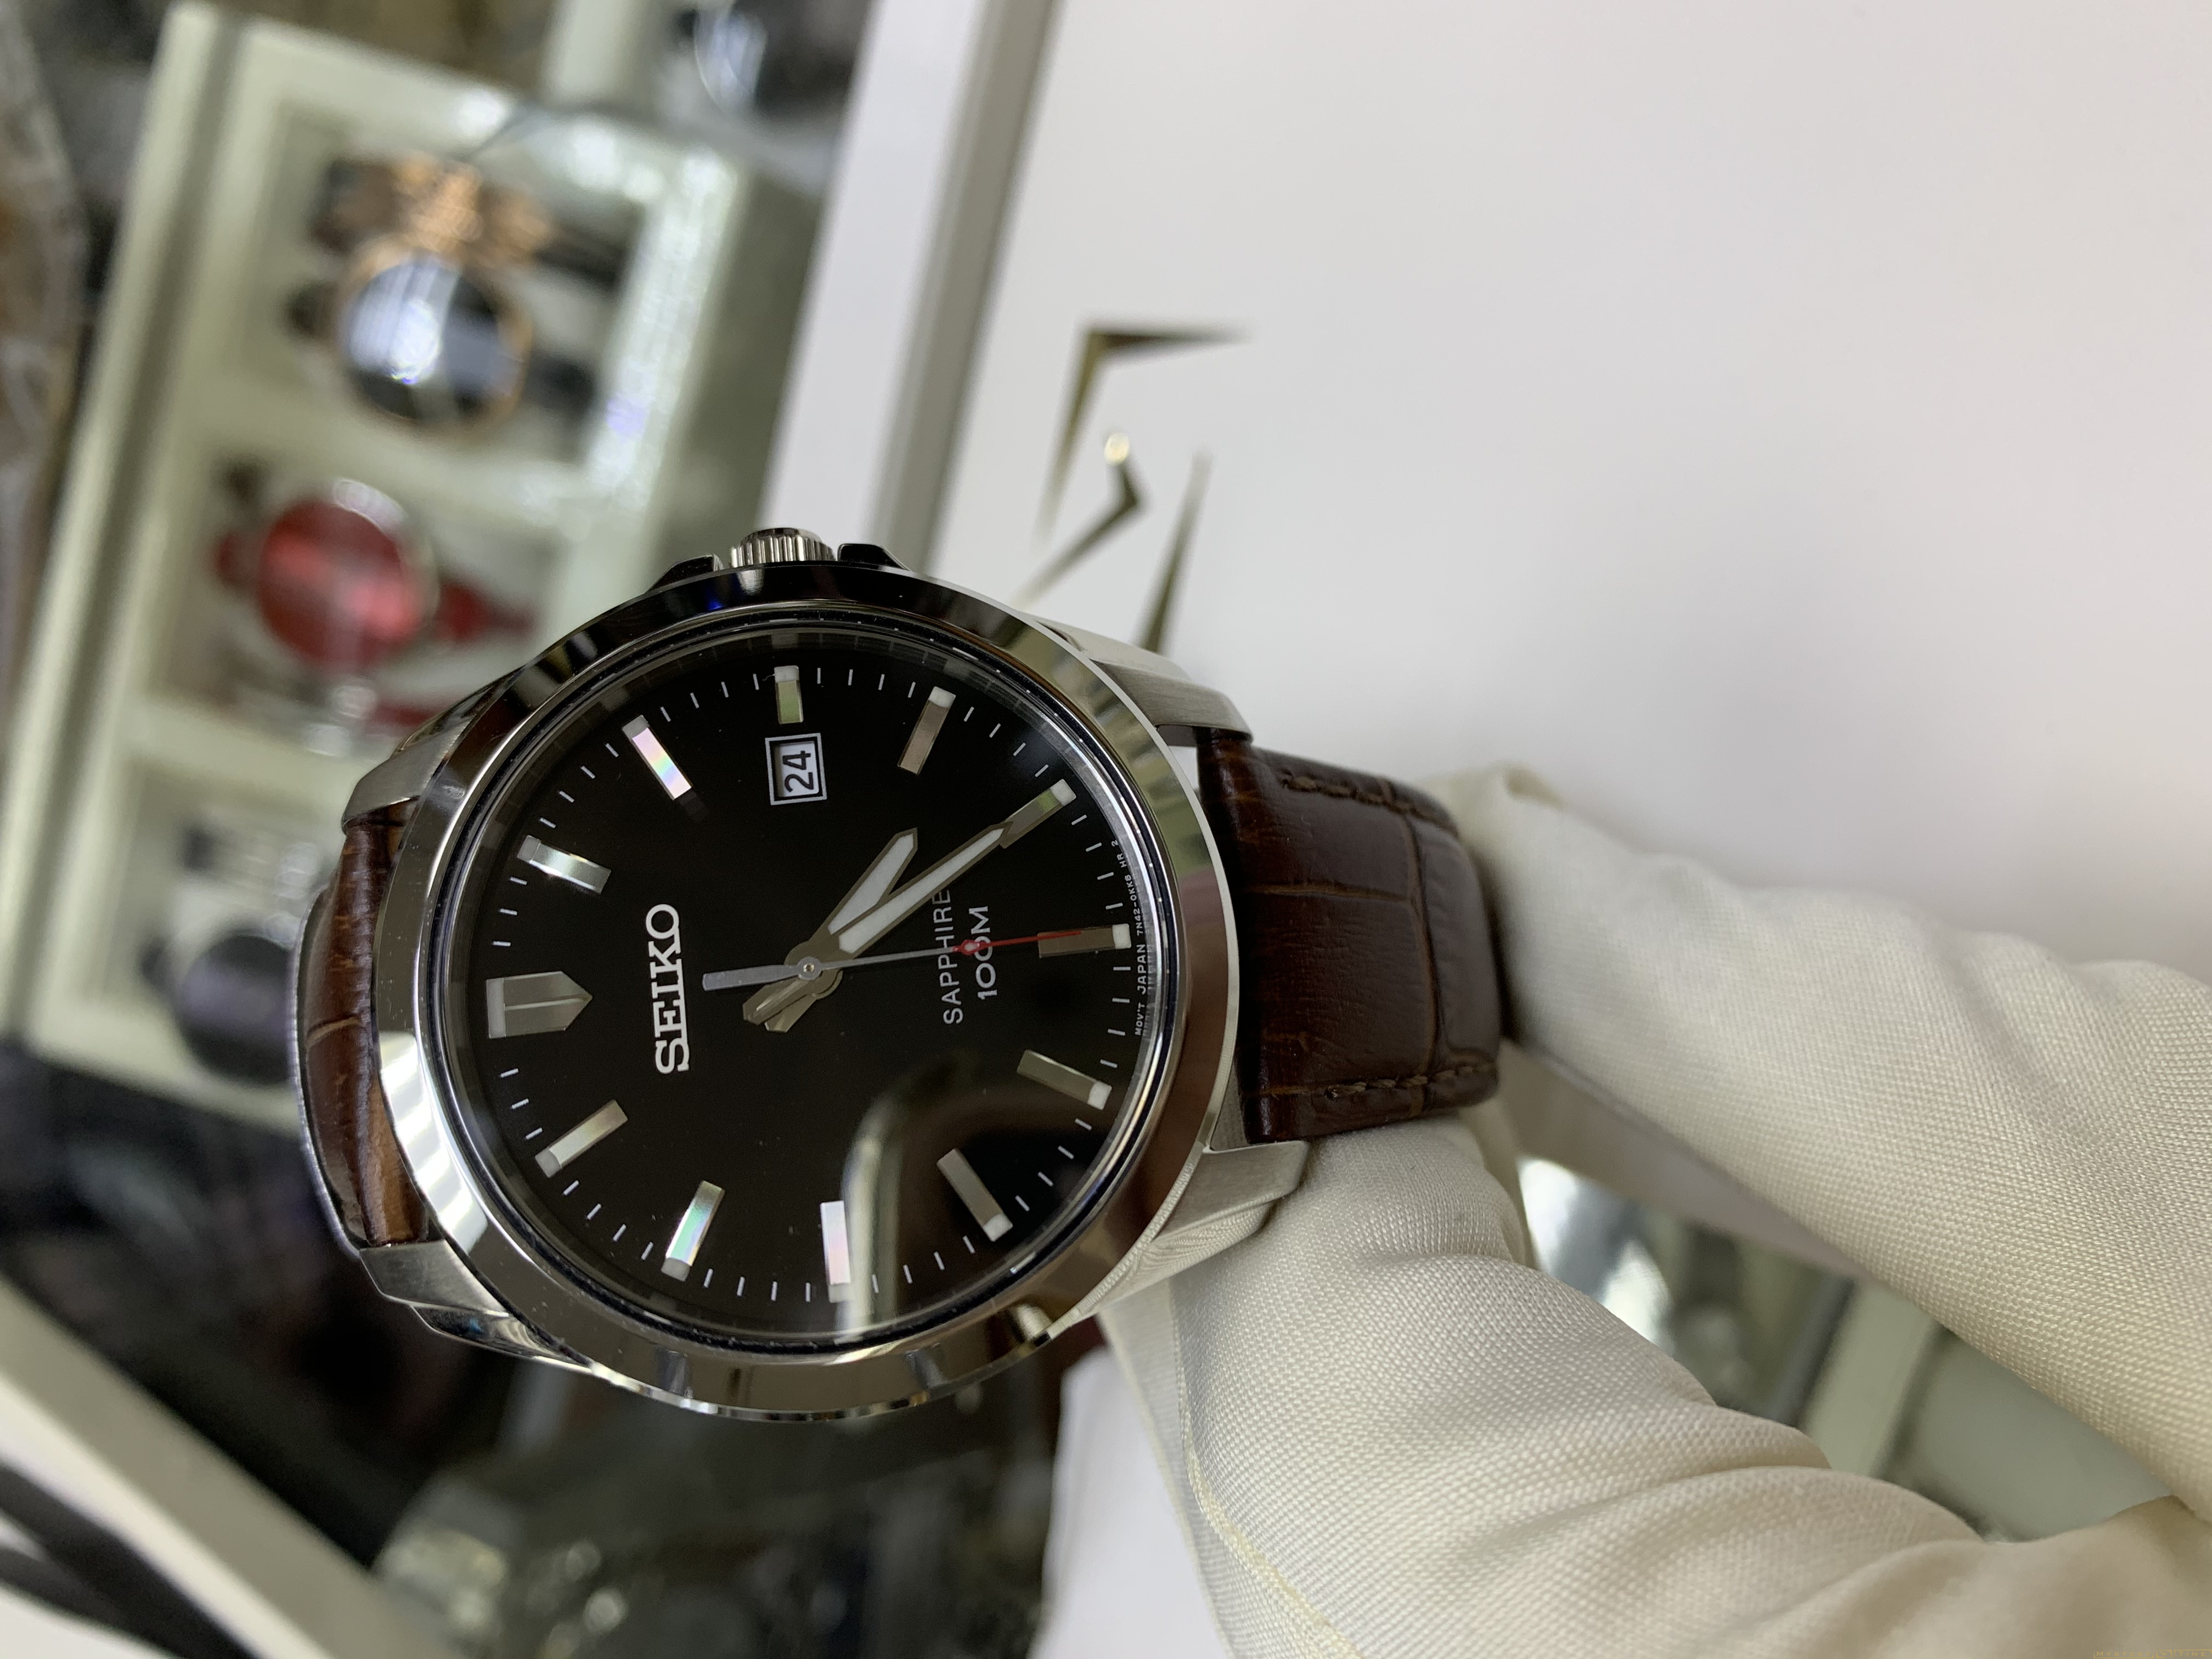 Наручные часы Seiko SGEH49P2 купить по низкой цене 19900 руб в Москве в  интернет-магазине